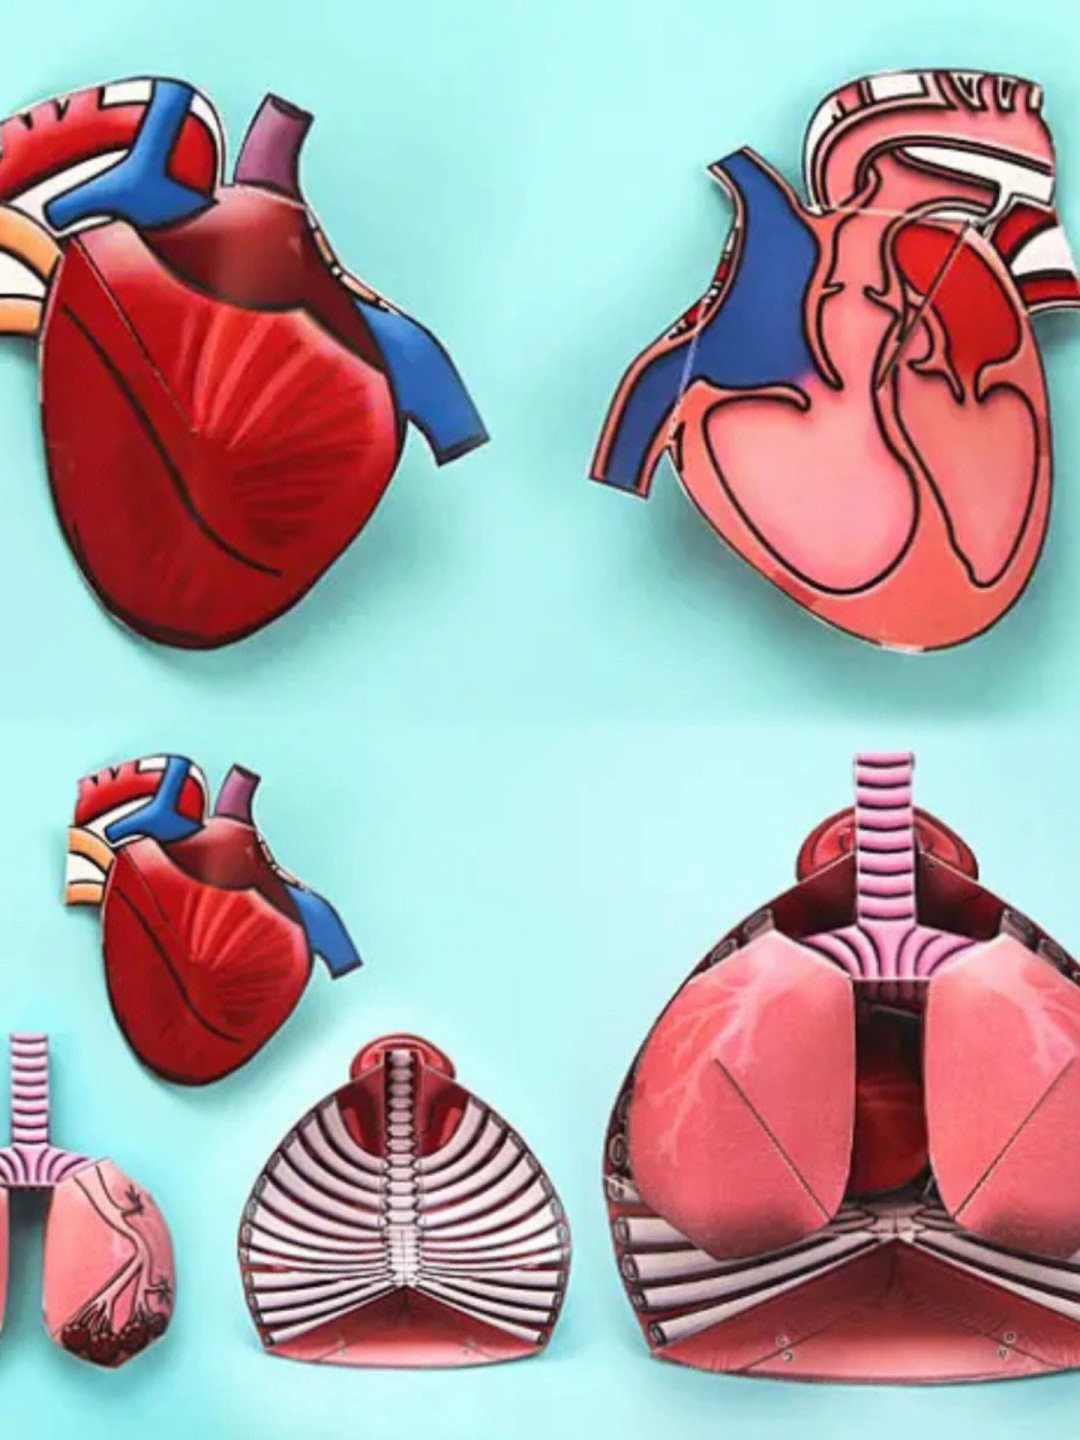 心脏模型手工制作步骤图片